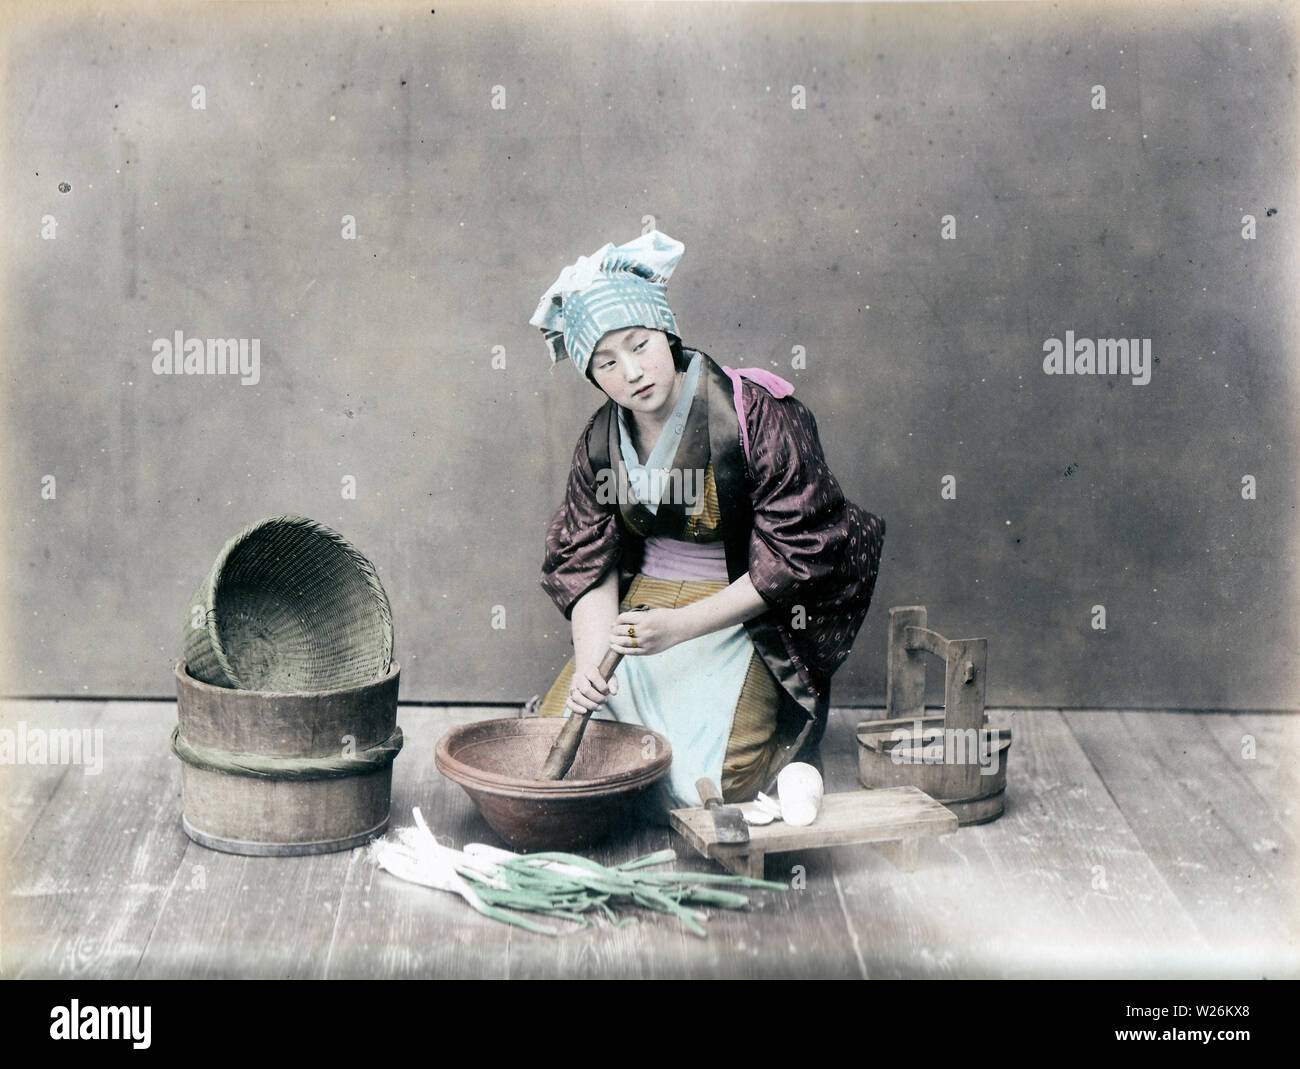 [1890s Japan - Japanische Frau Kochen] - In diesem Studio Foto der täglichen Küche arbeiten, eine Frau im Kimono ist das Schleifen etwas in einem suribachi (Mörtel). Auf der linken Seite ist ein Oke (hölzerne Schaufel), während auf der rechten daikon Rettich (Japanisch) auf einer hölzernen cutboard gesehen werden kann). 19 Vintage albumen Foto. Stockfoto